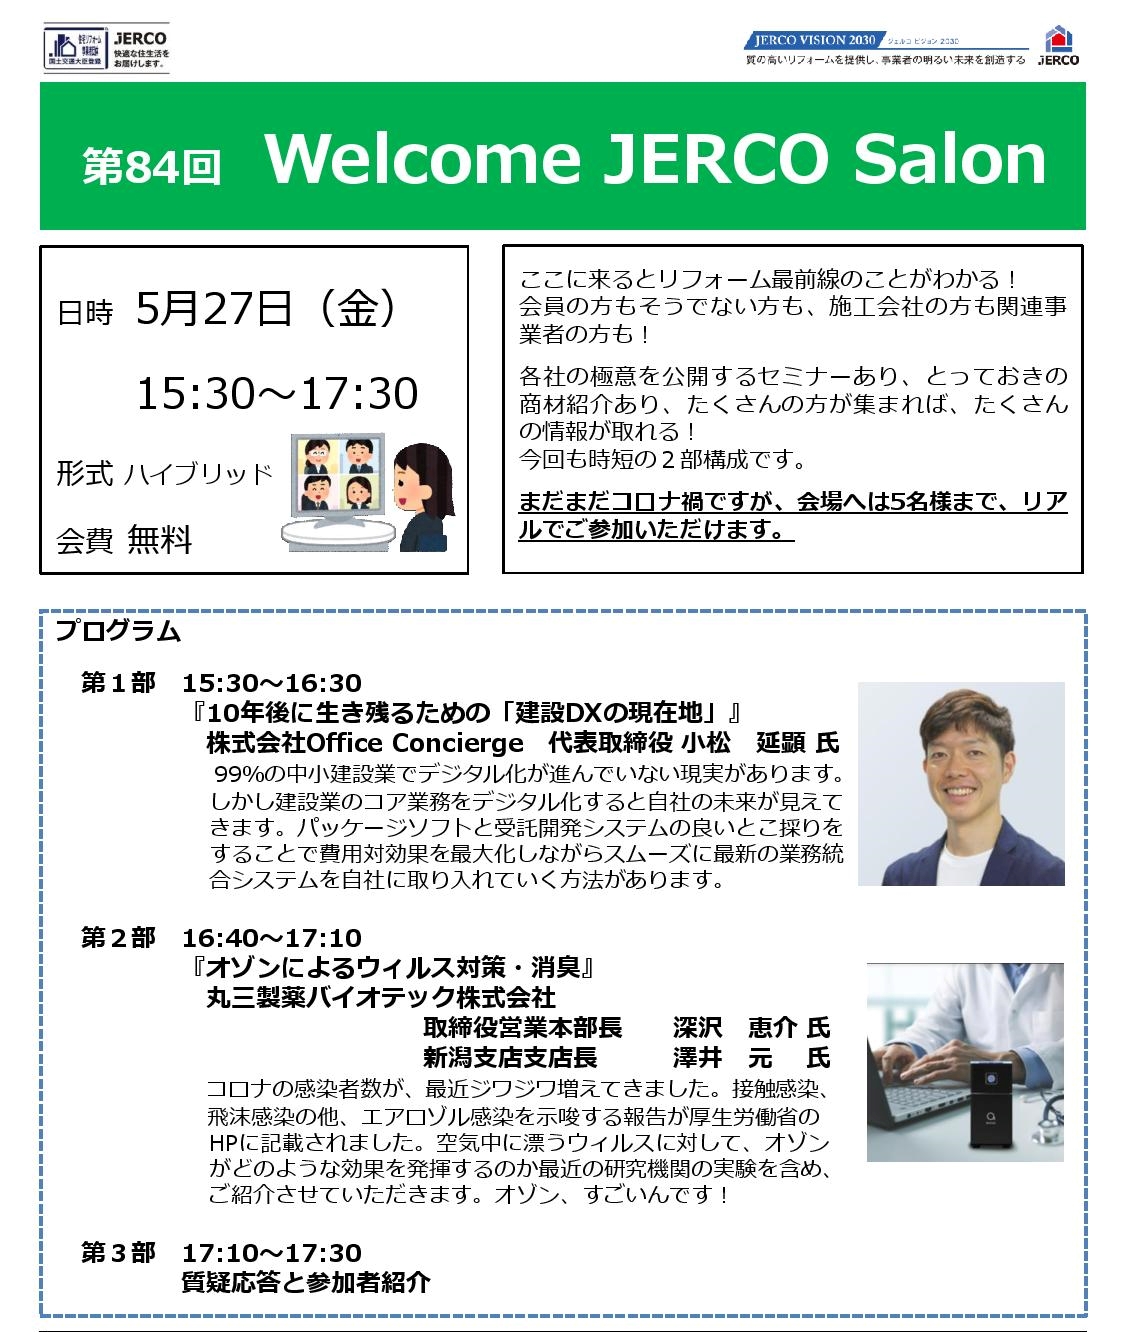 第84回 Welcome JERCO Salon『10年後に生き残るための「建設DXの現在地」』『オゾンによるウィルス対策・消臭』